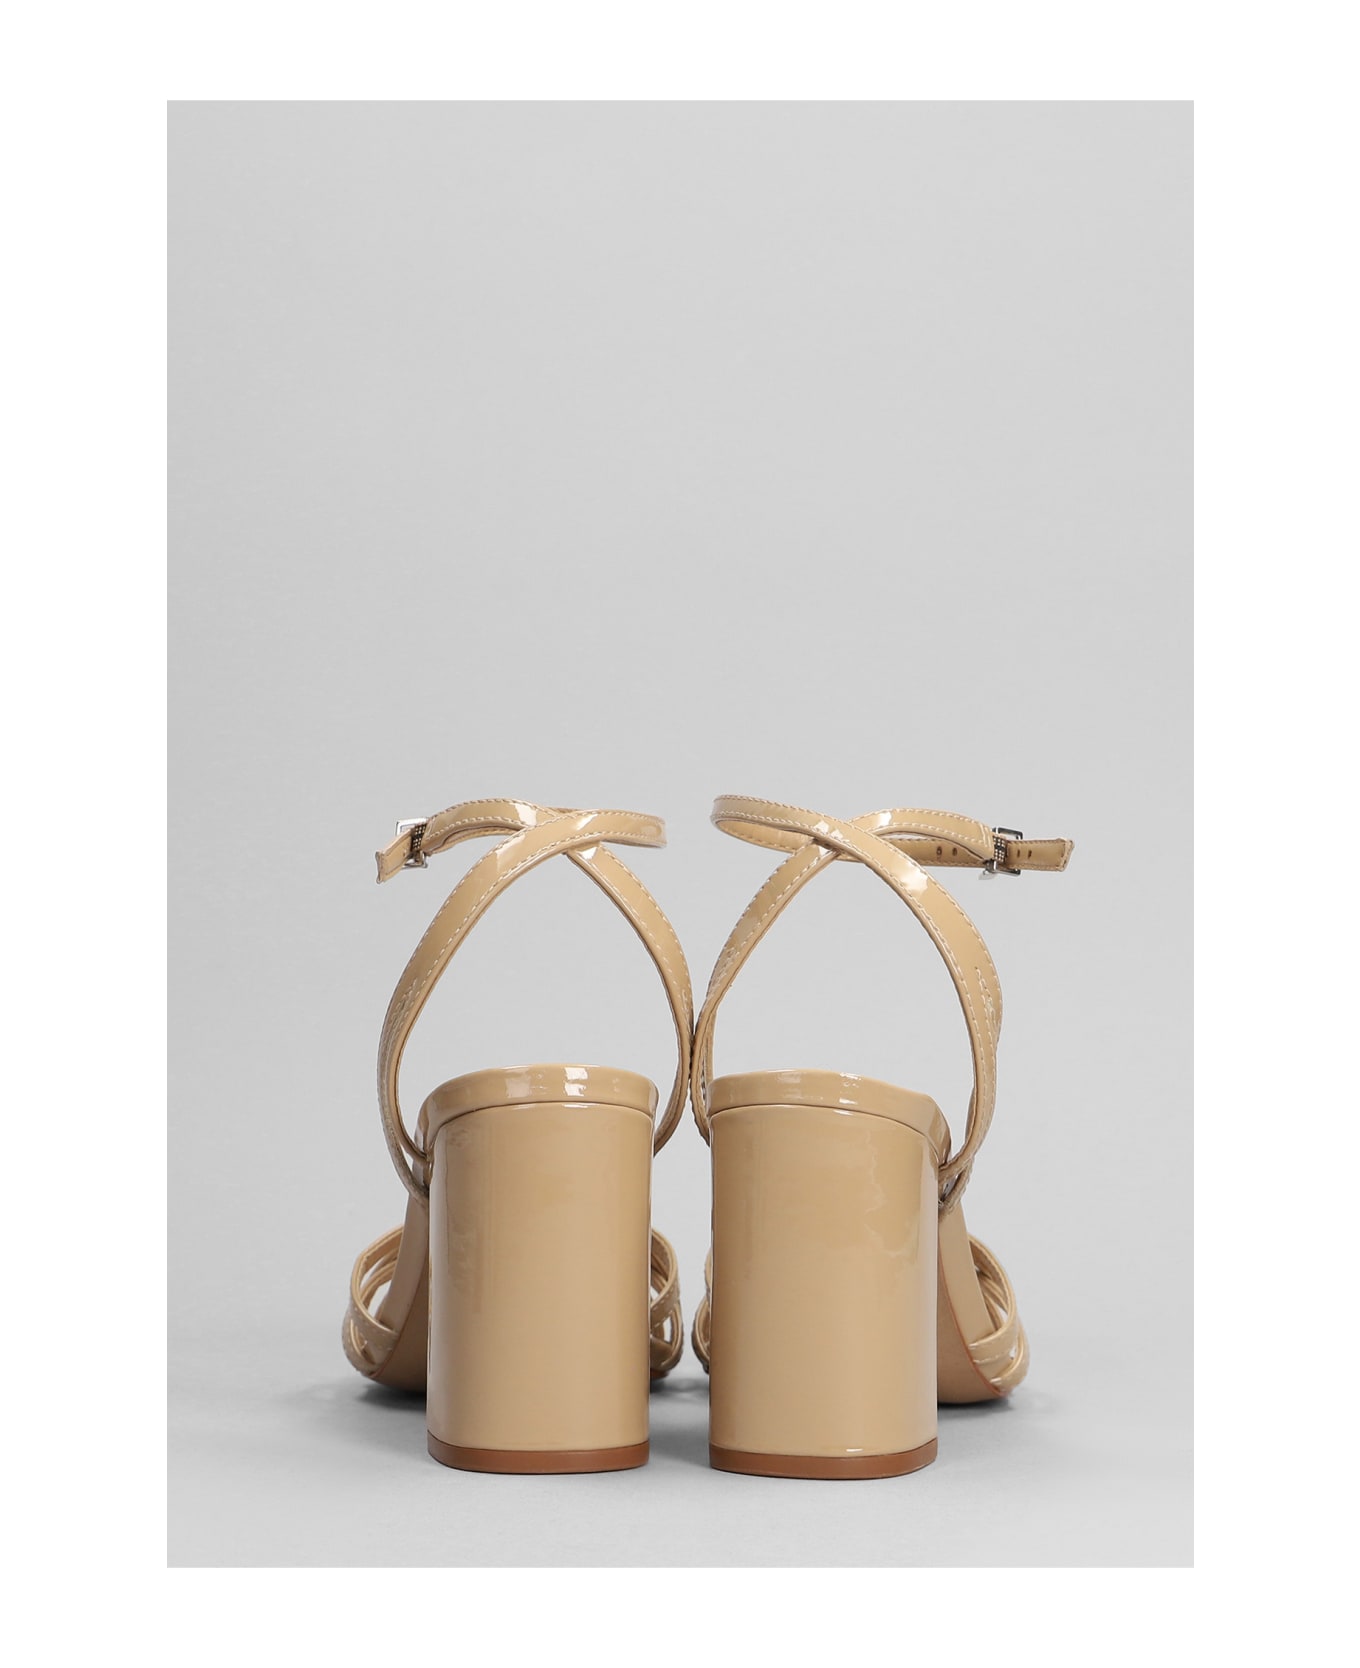 Schutz Sandals In Beige Patent Leather - beige サンダル